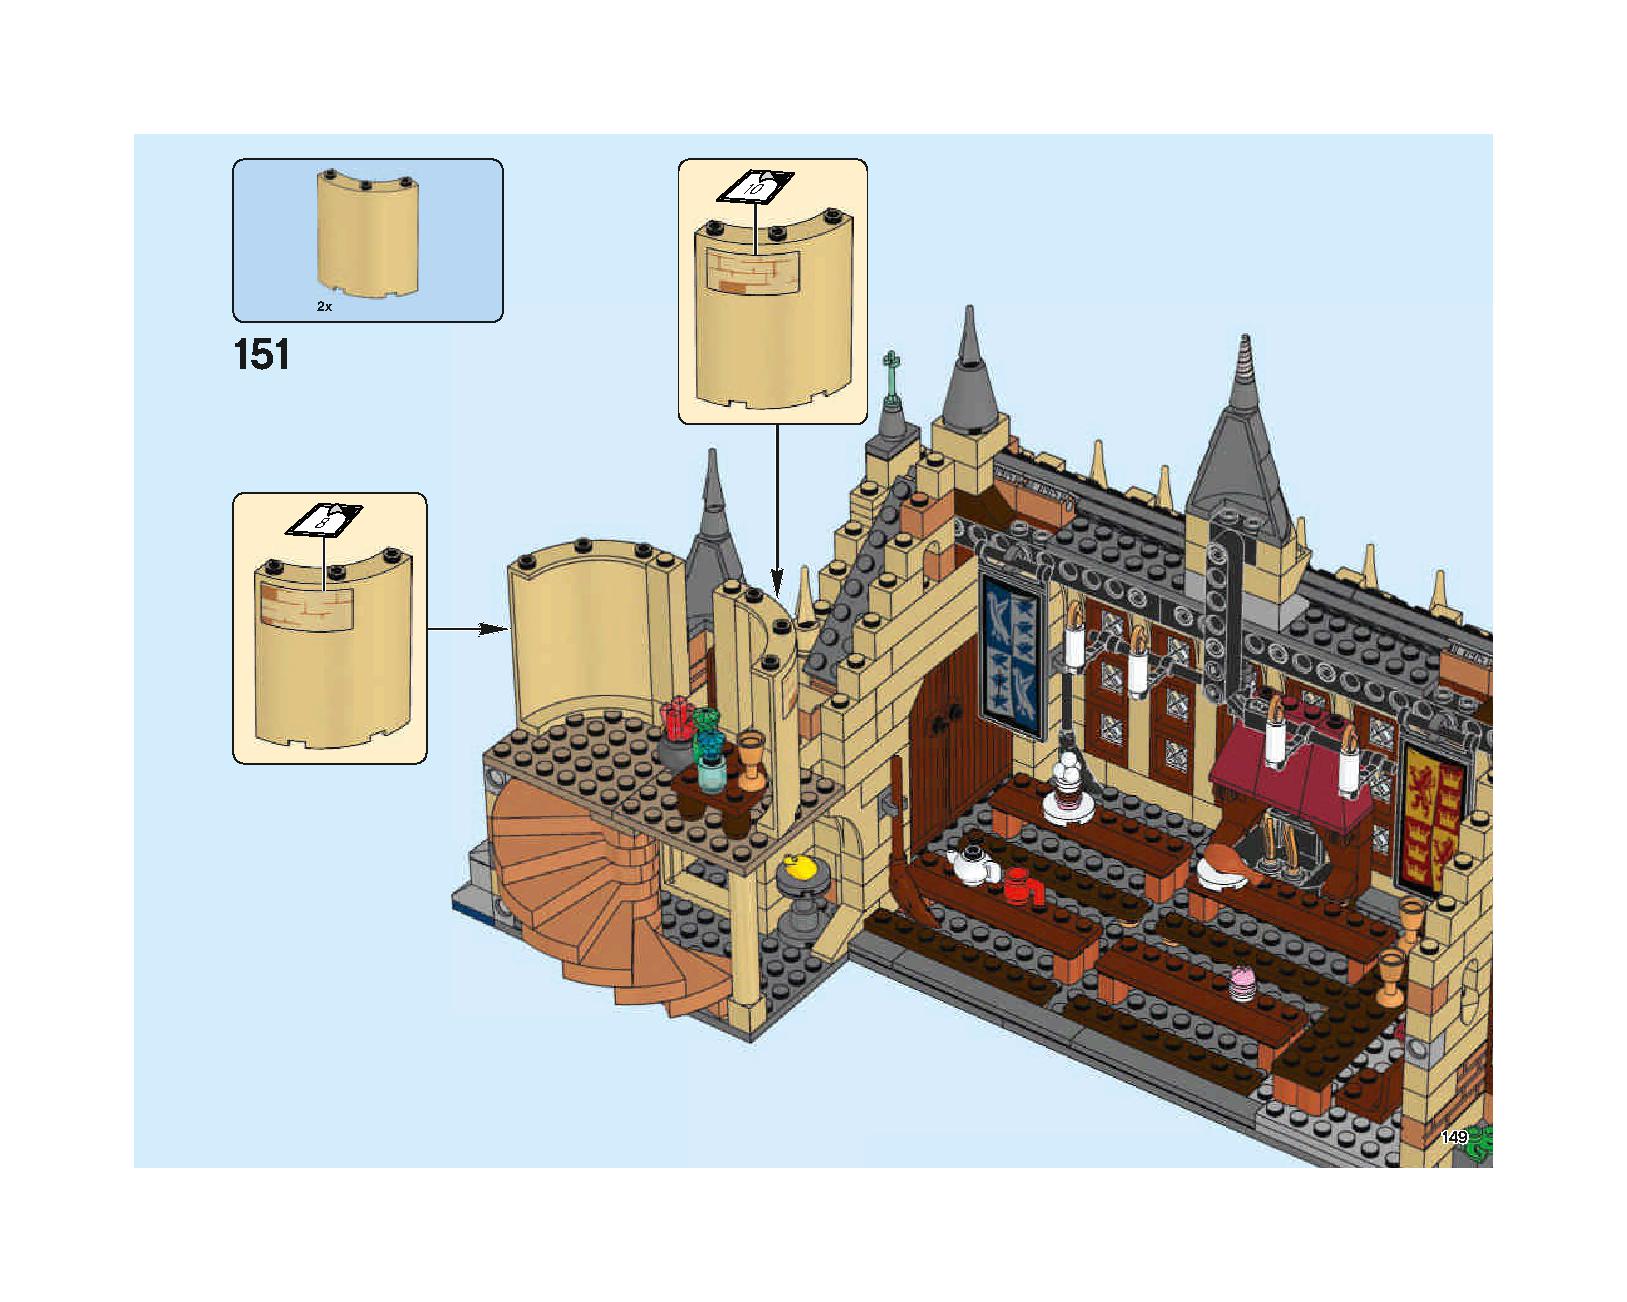 ホグワーツの大広間 75954 レゴの商品情報 レゴの説明書・組立方法 149 page